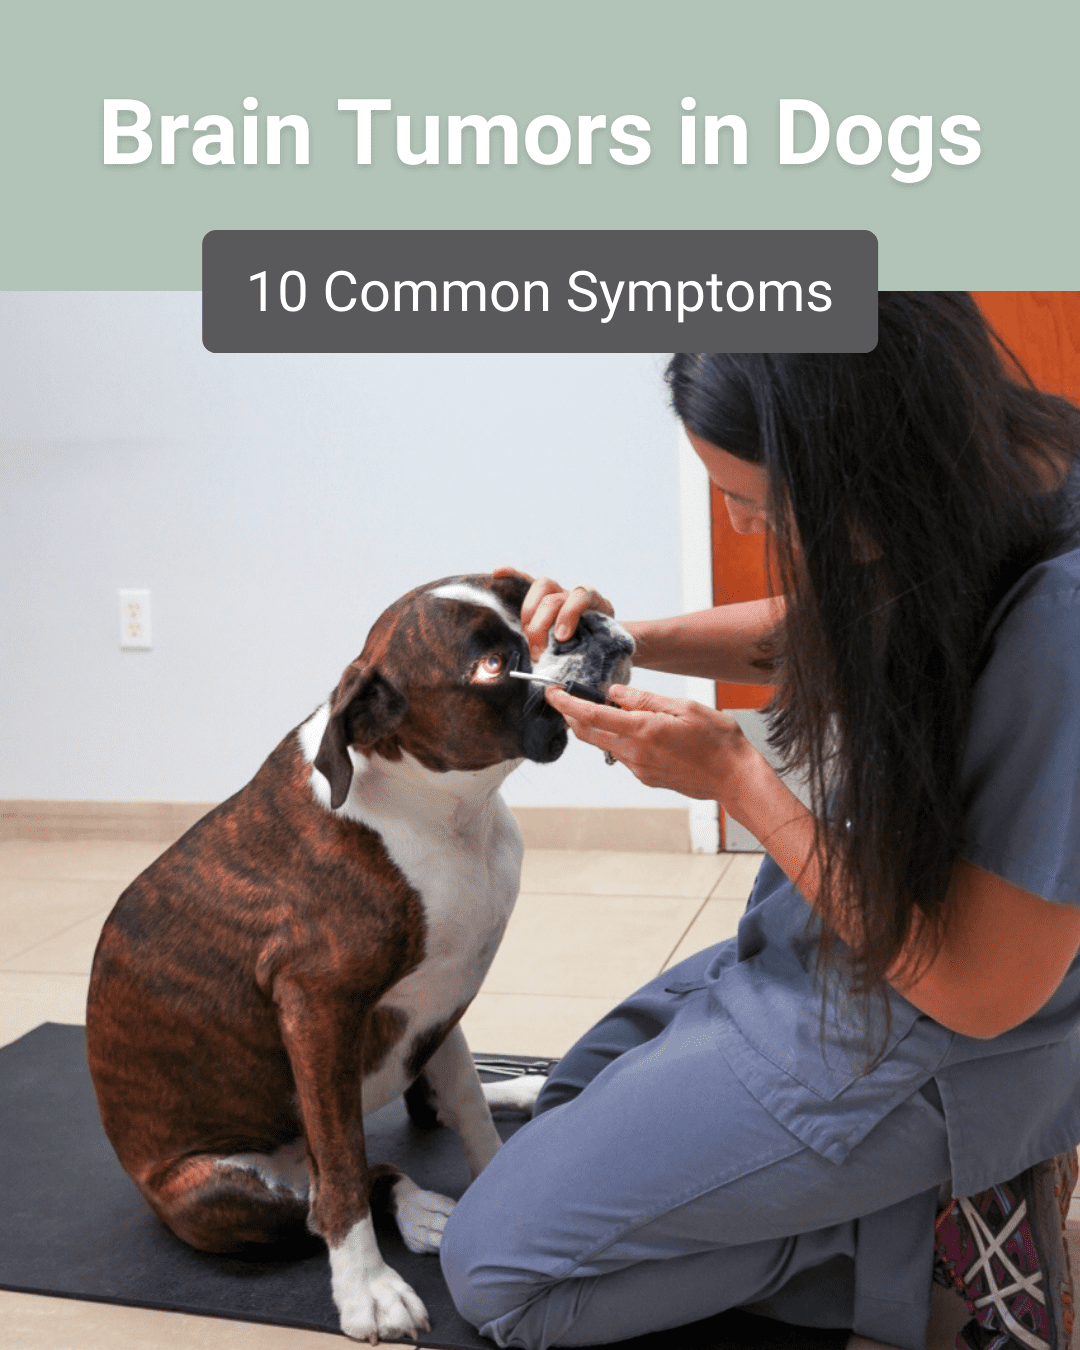 10 Common Brain Tumor Symptoms in Dogs